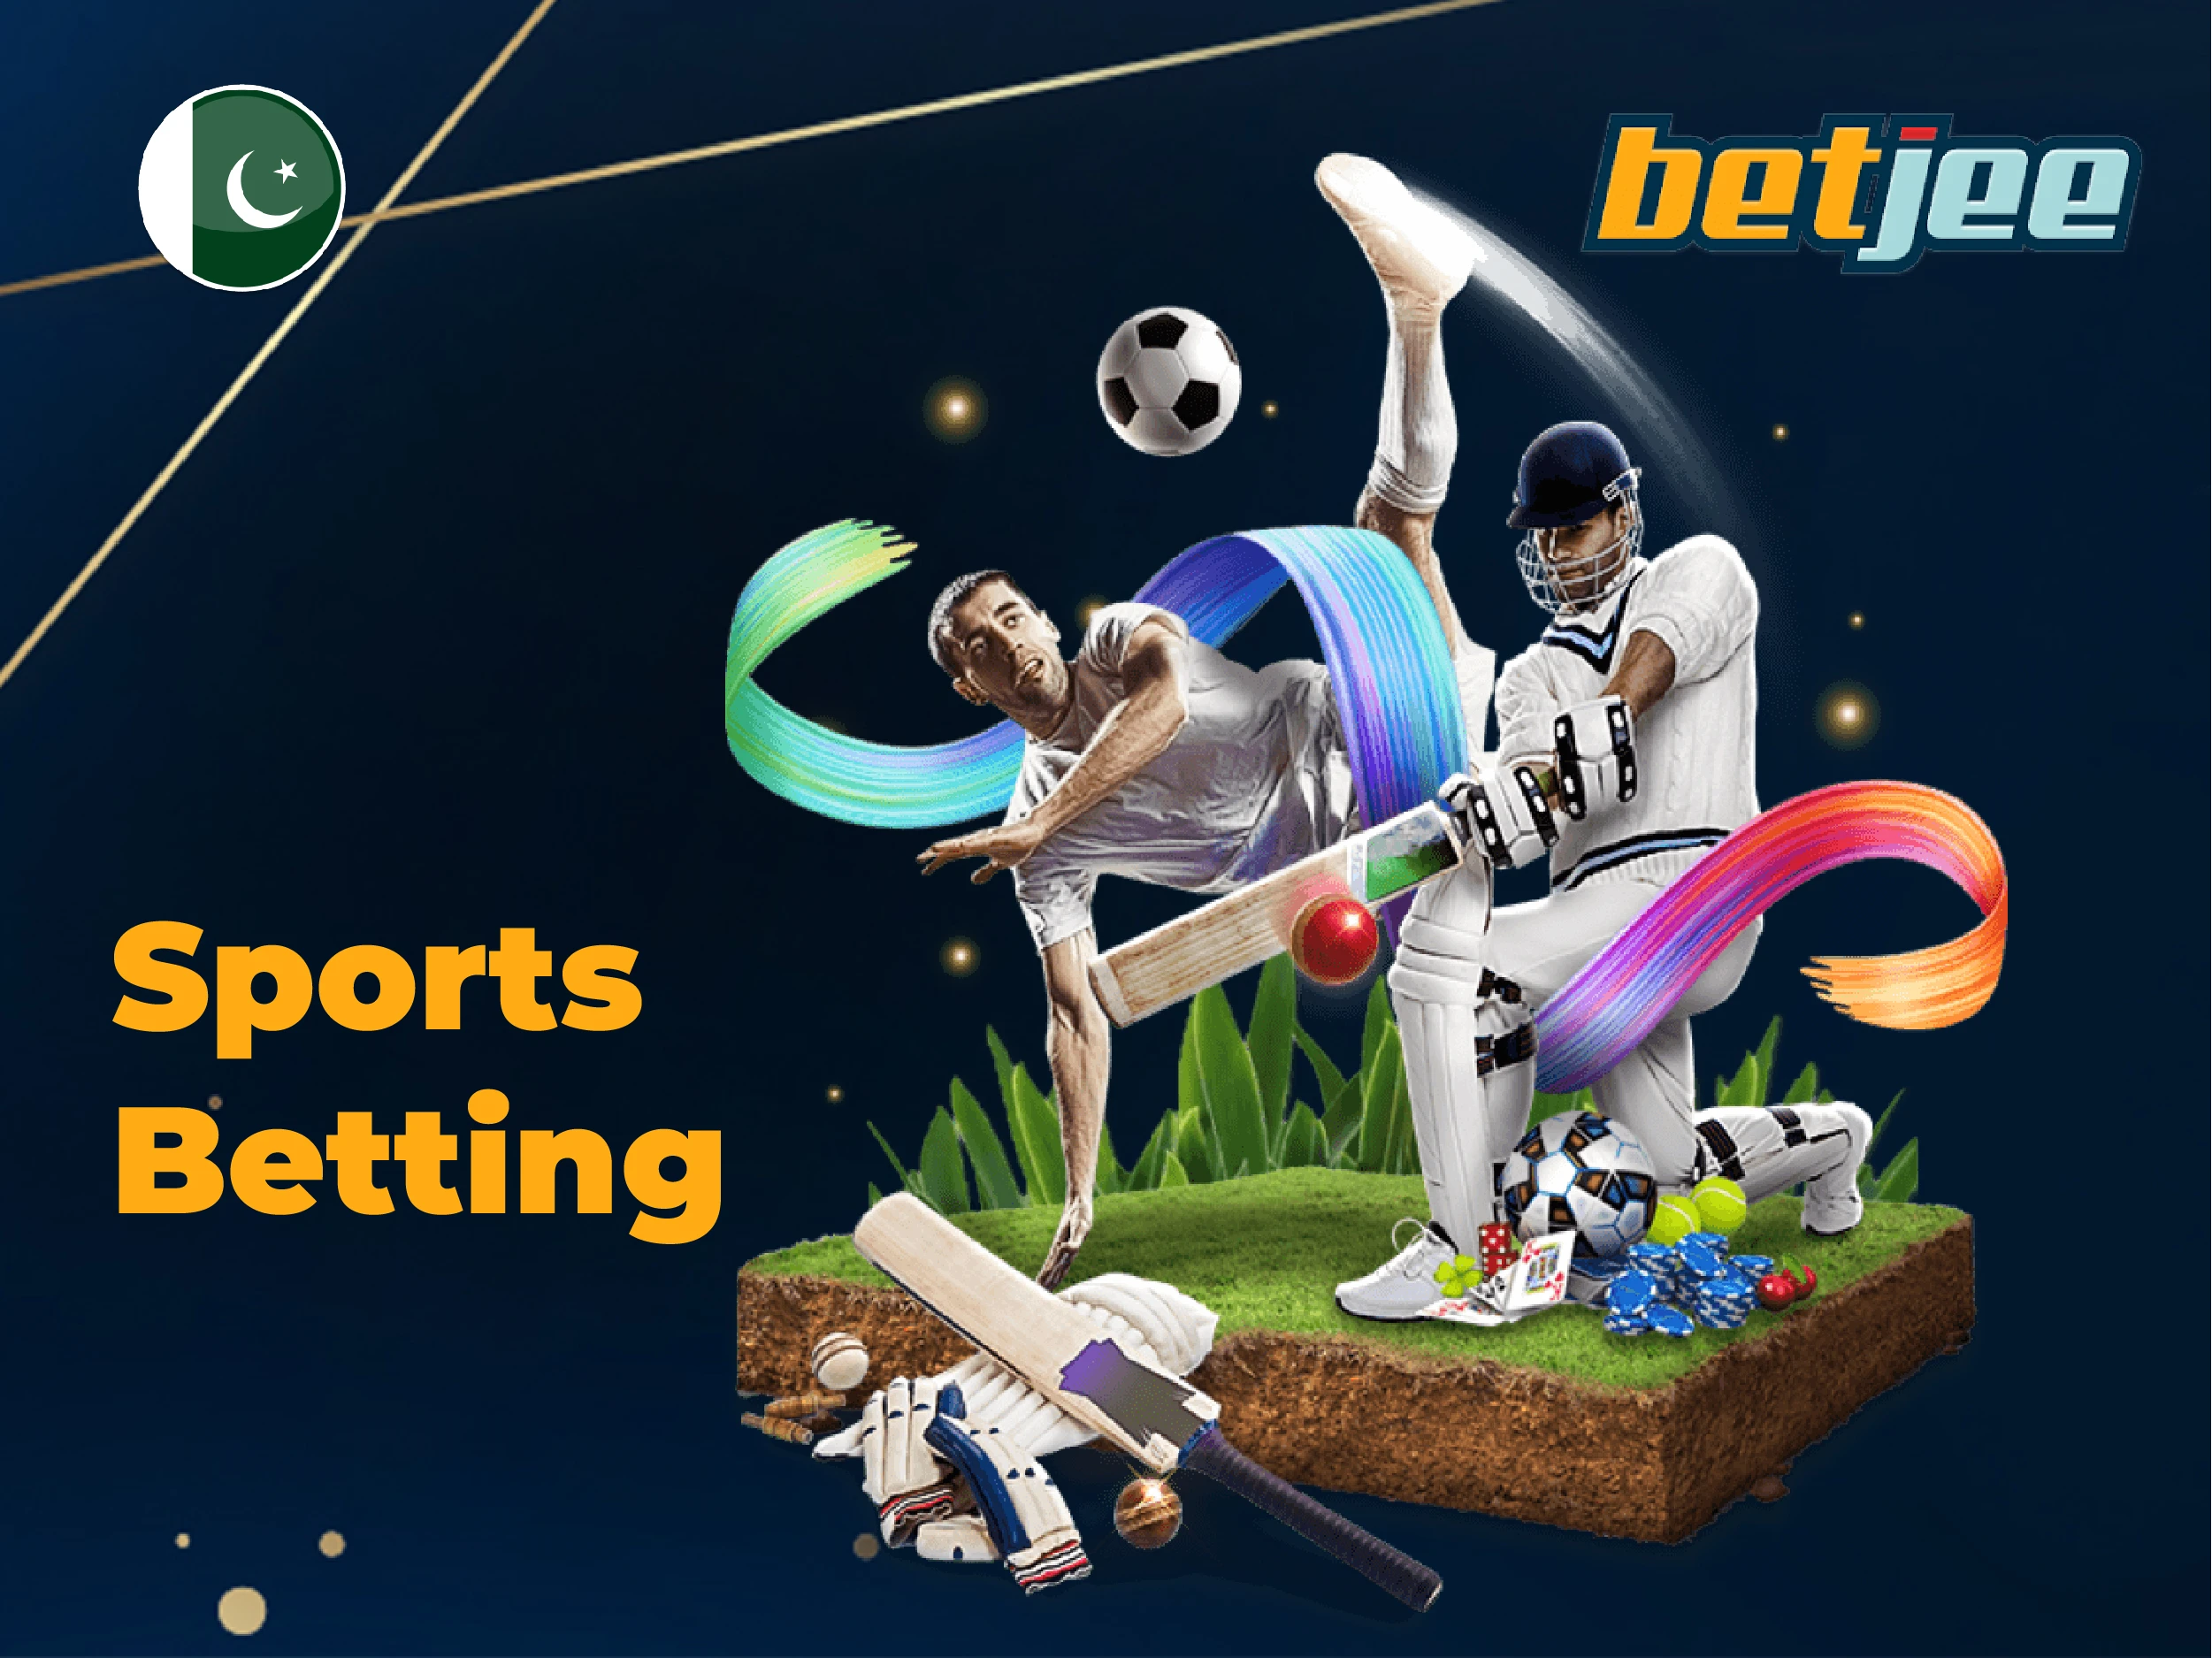 Betjee sports betting in Pakistan